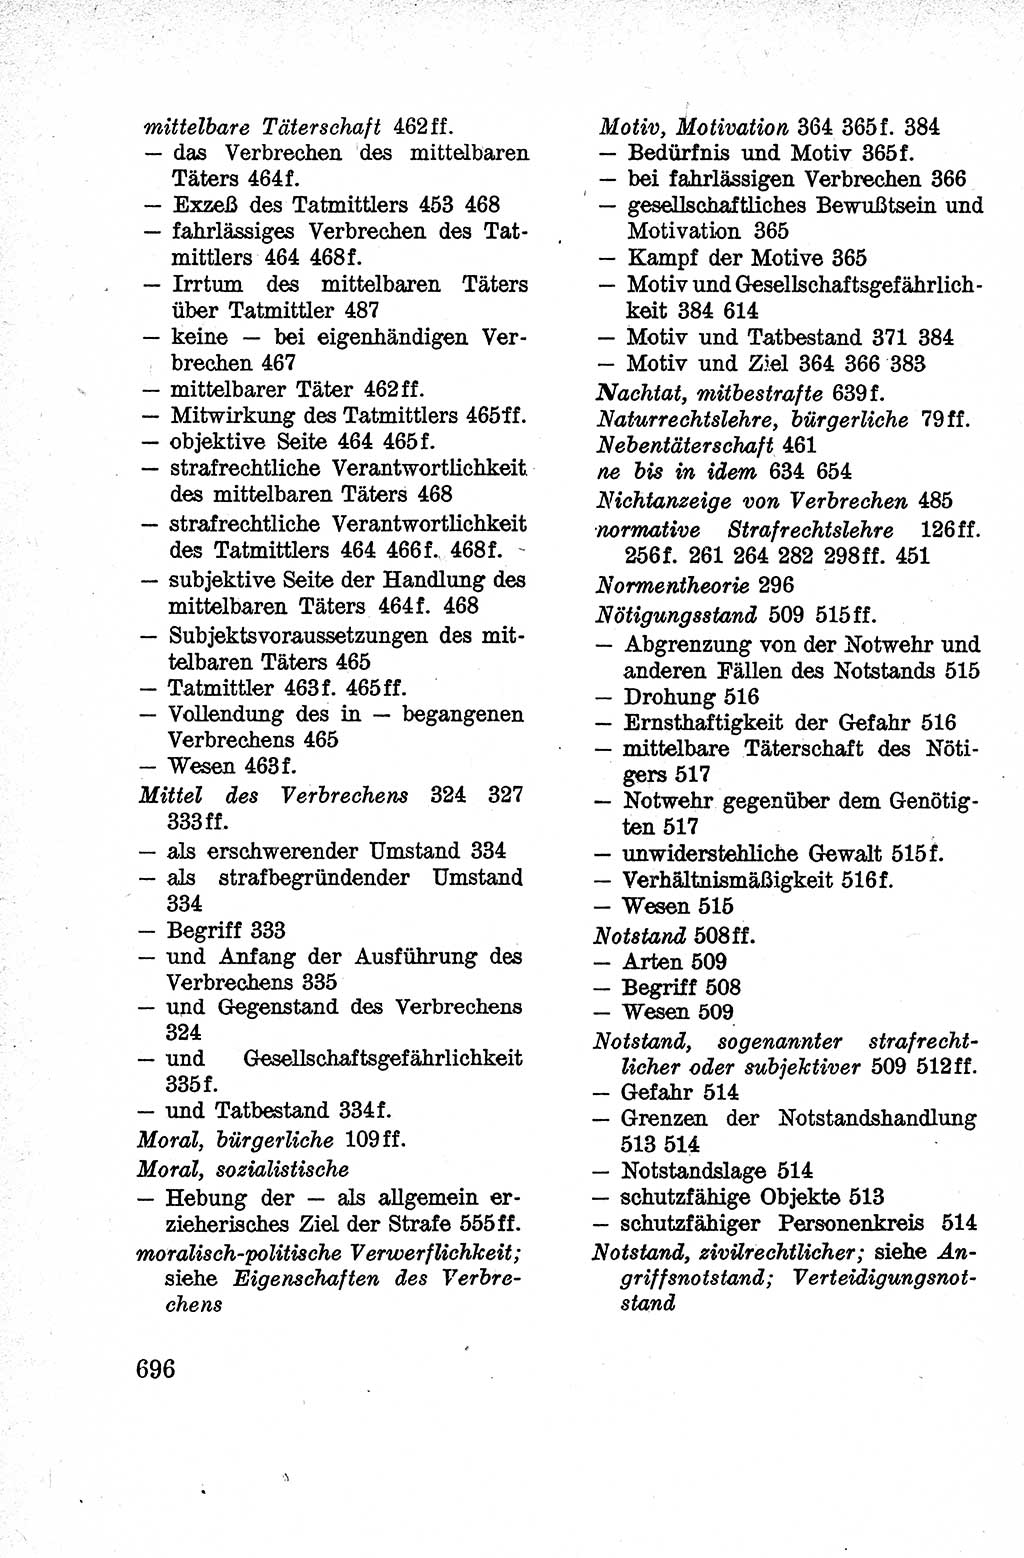 Lehrbuch des Strafrechts der Deutschen Demokratischen Republik (DDR), Allgemeiner Teil 1959, Seite 696 (Lb. Strafr. DDR AT 1959, S. 696)